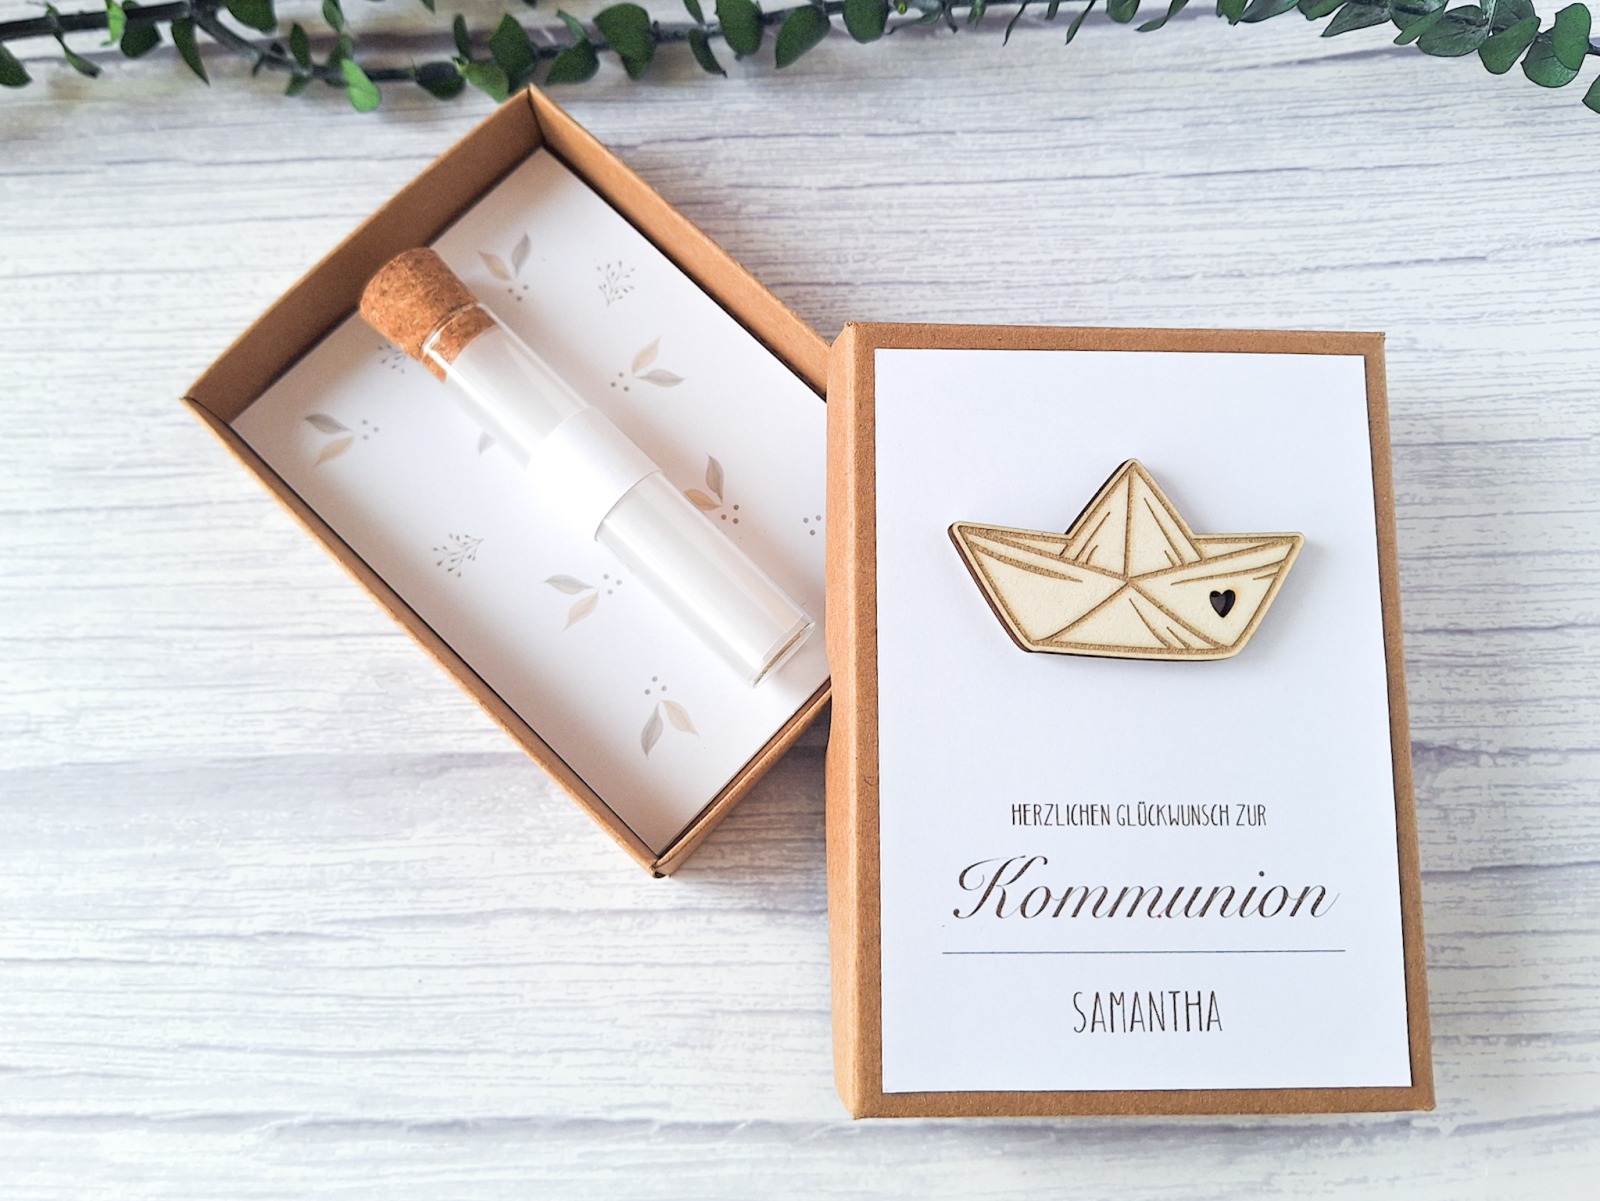 Stilvolle Verpackung für Geldgeschenke zur Kommunion - Exklusive Geschenkbox für die Erstkommunion